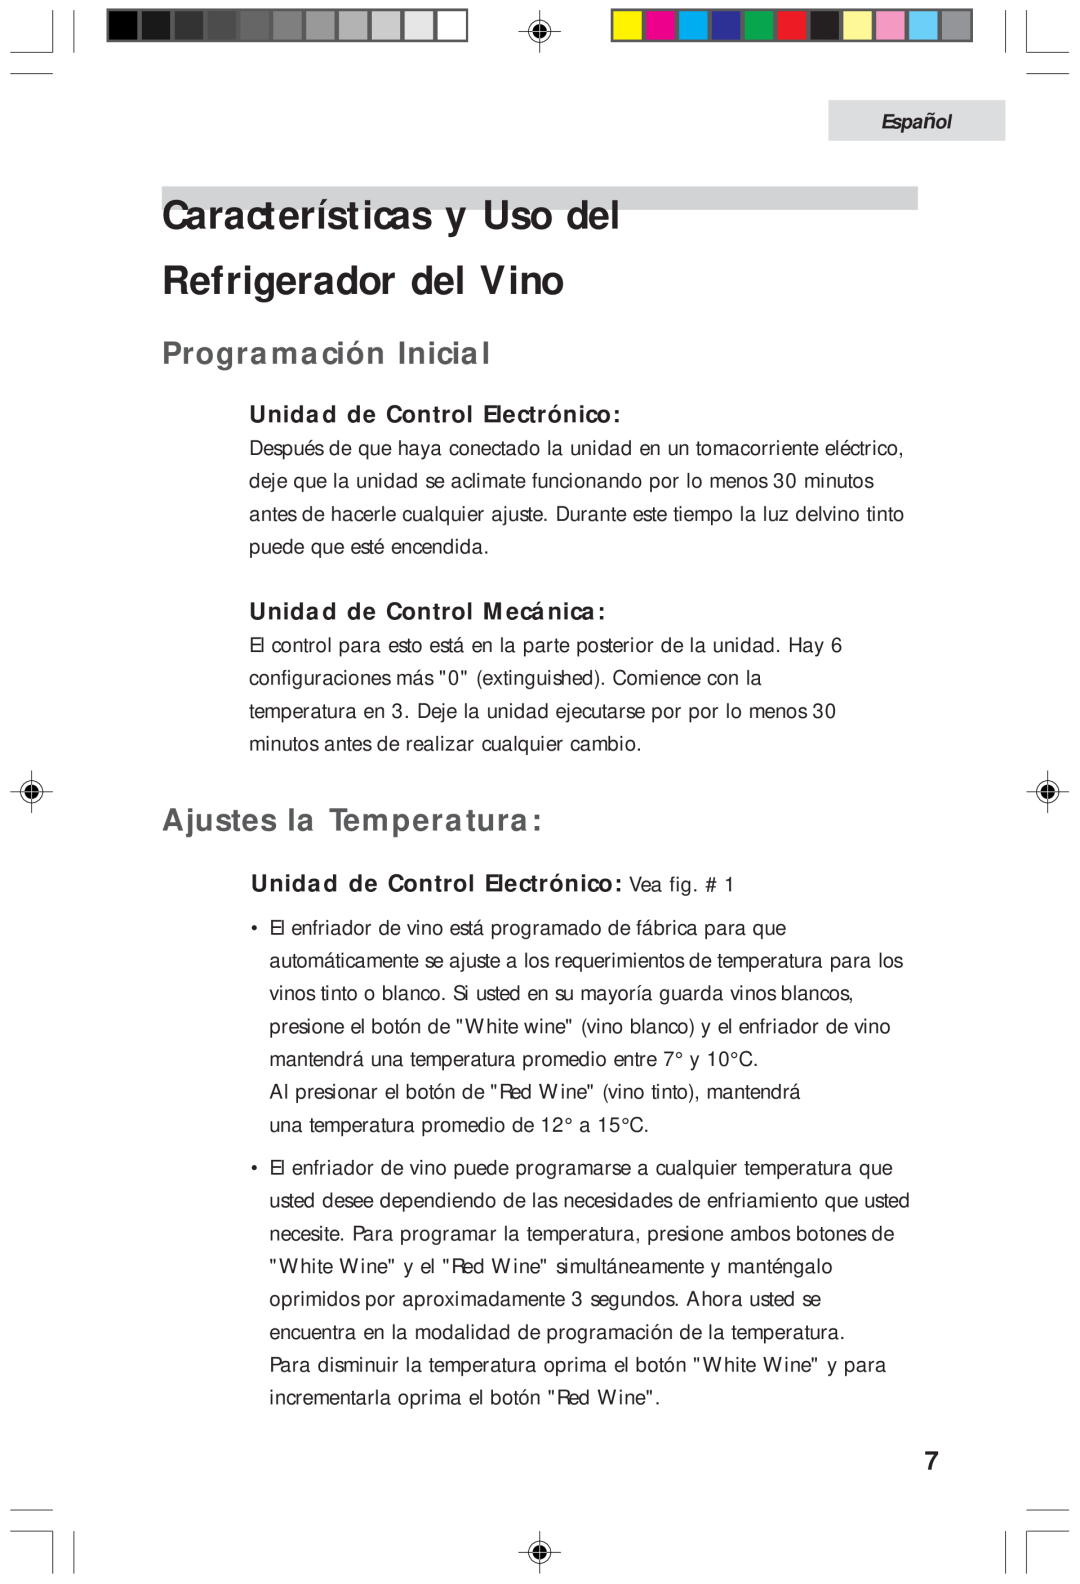 Haier HVFM20A Características y Uso del Refrigerador del Vino, Programación Inicial, Ajustes la Temperatura, Español 